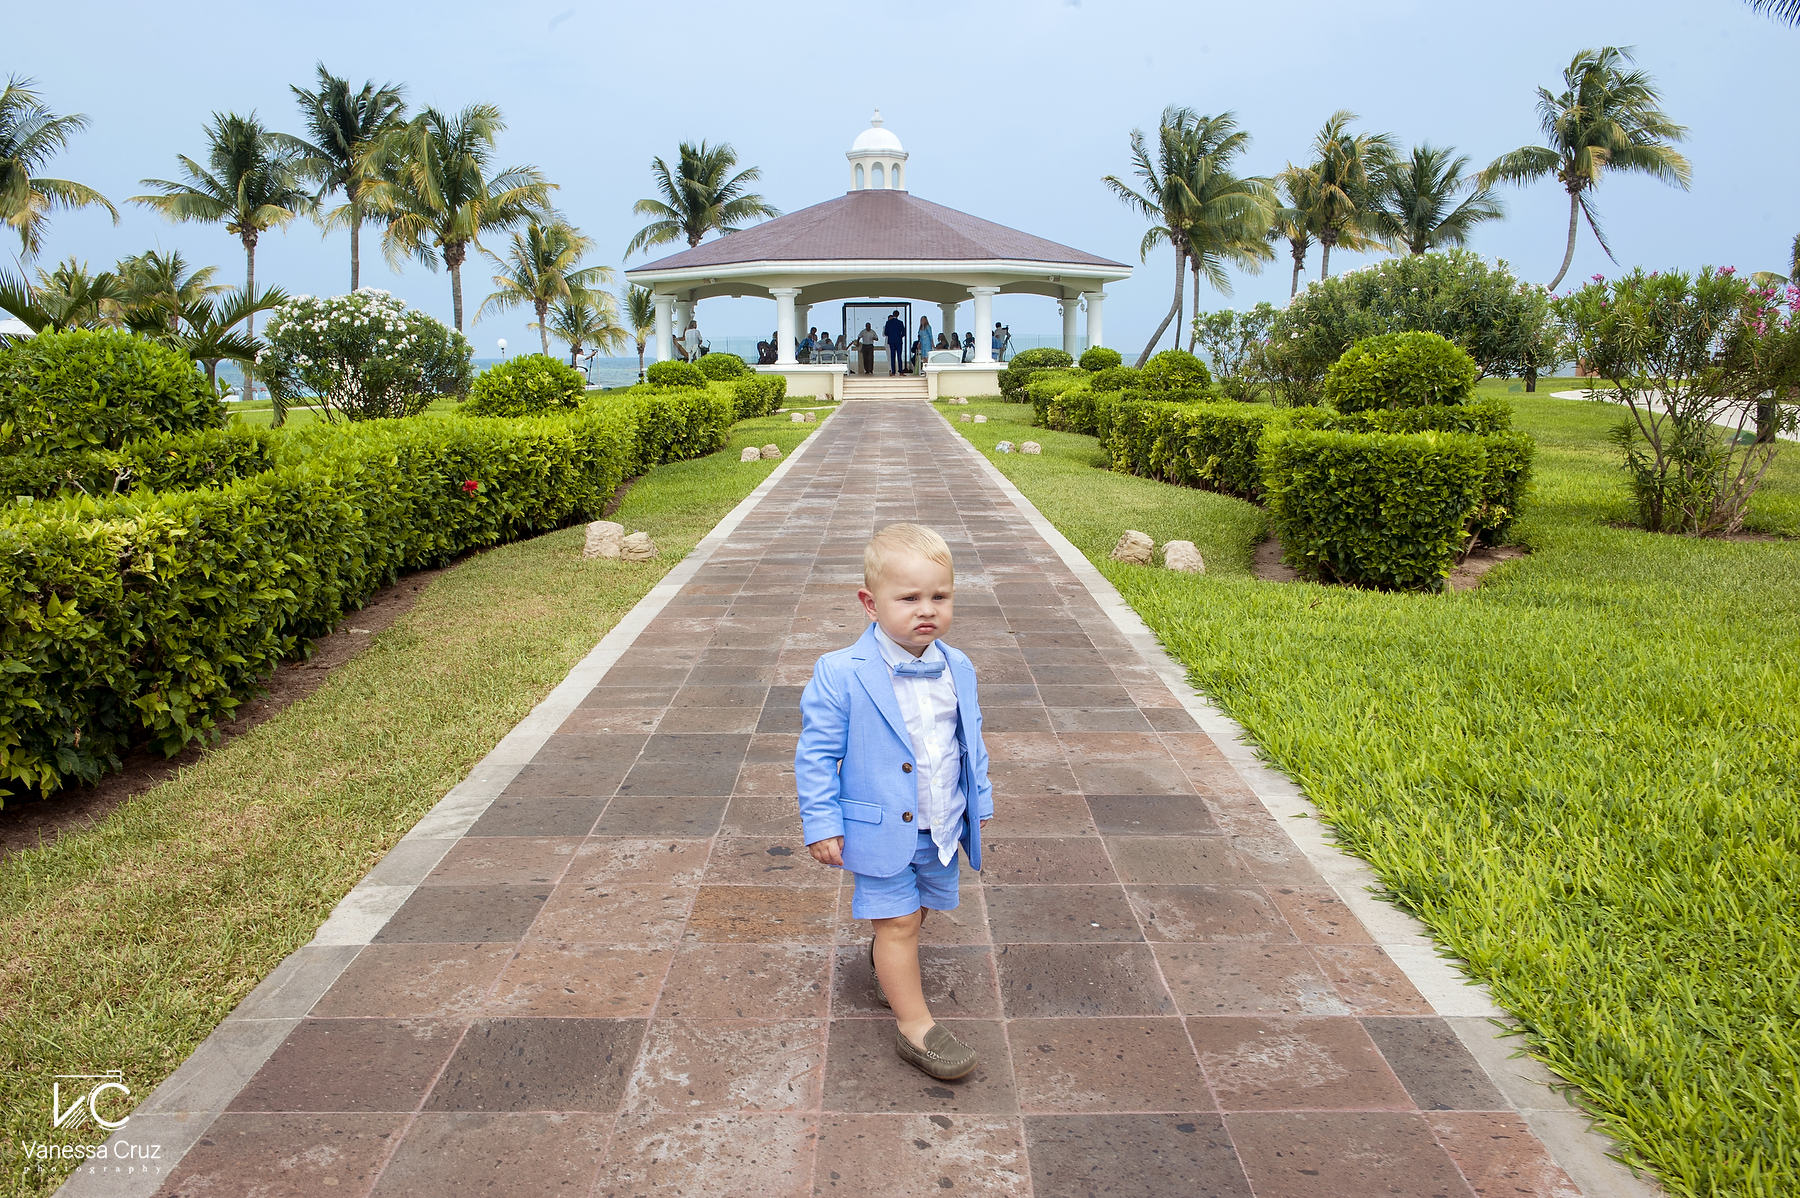 Kid at Gazebo Wedding Moon Palace Cancun Mexico